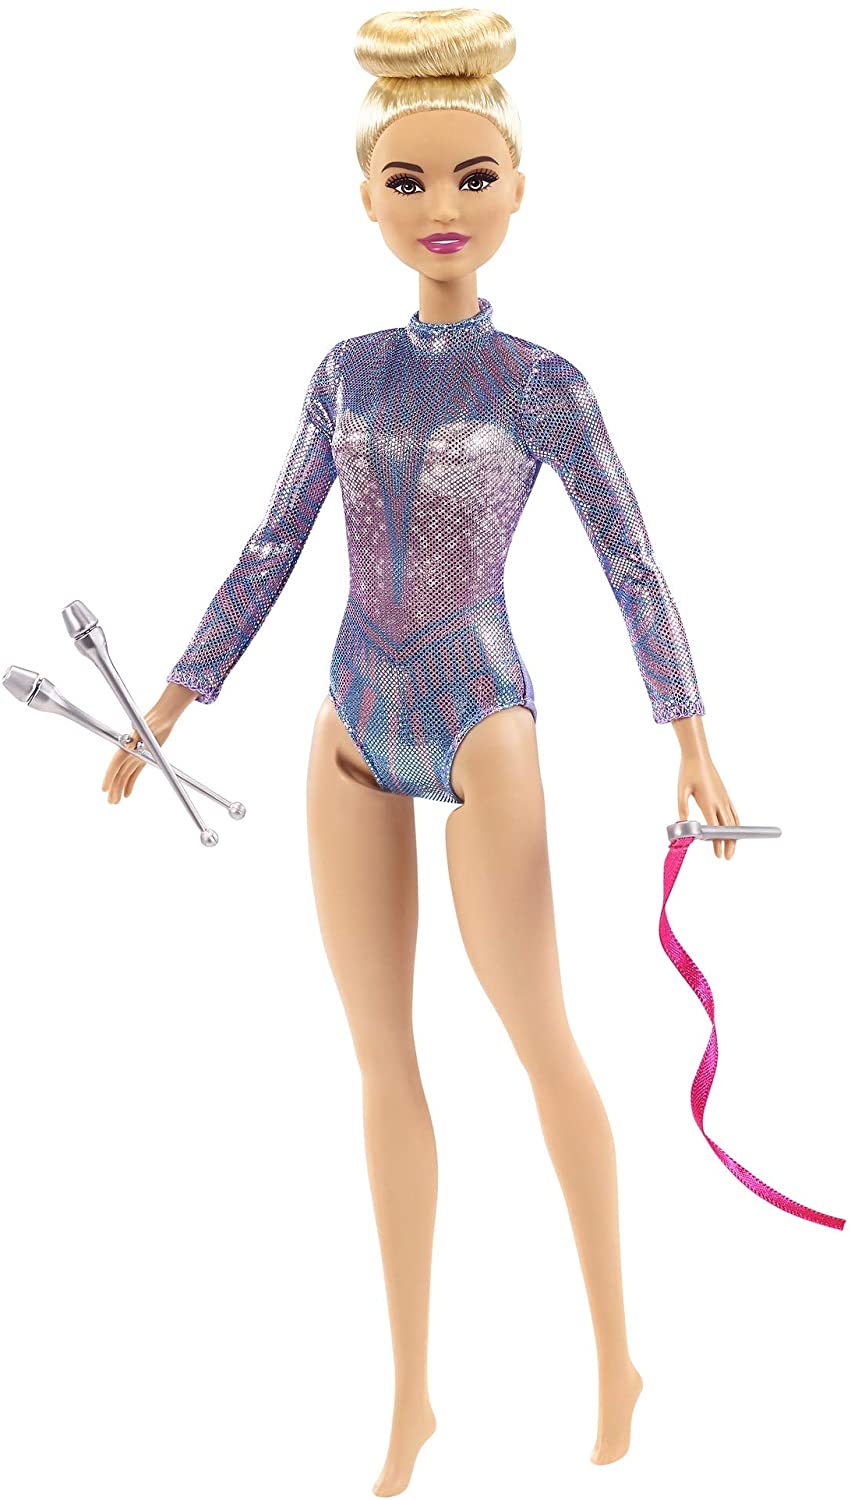 Barbie Rhythmic Gymnast Blonde Doll with Colorful Metallic Leotard, 2 Clubs & Ribbon Accessory